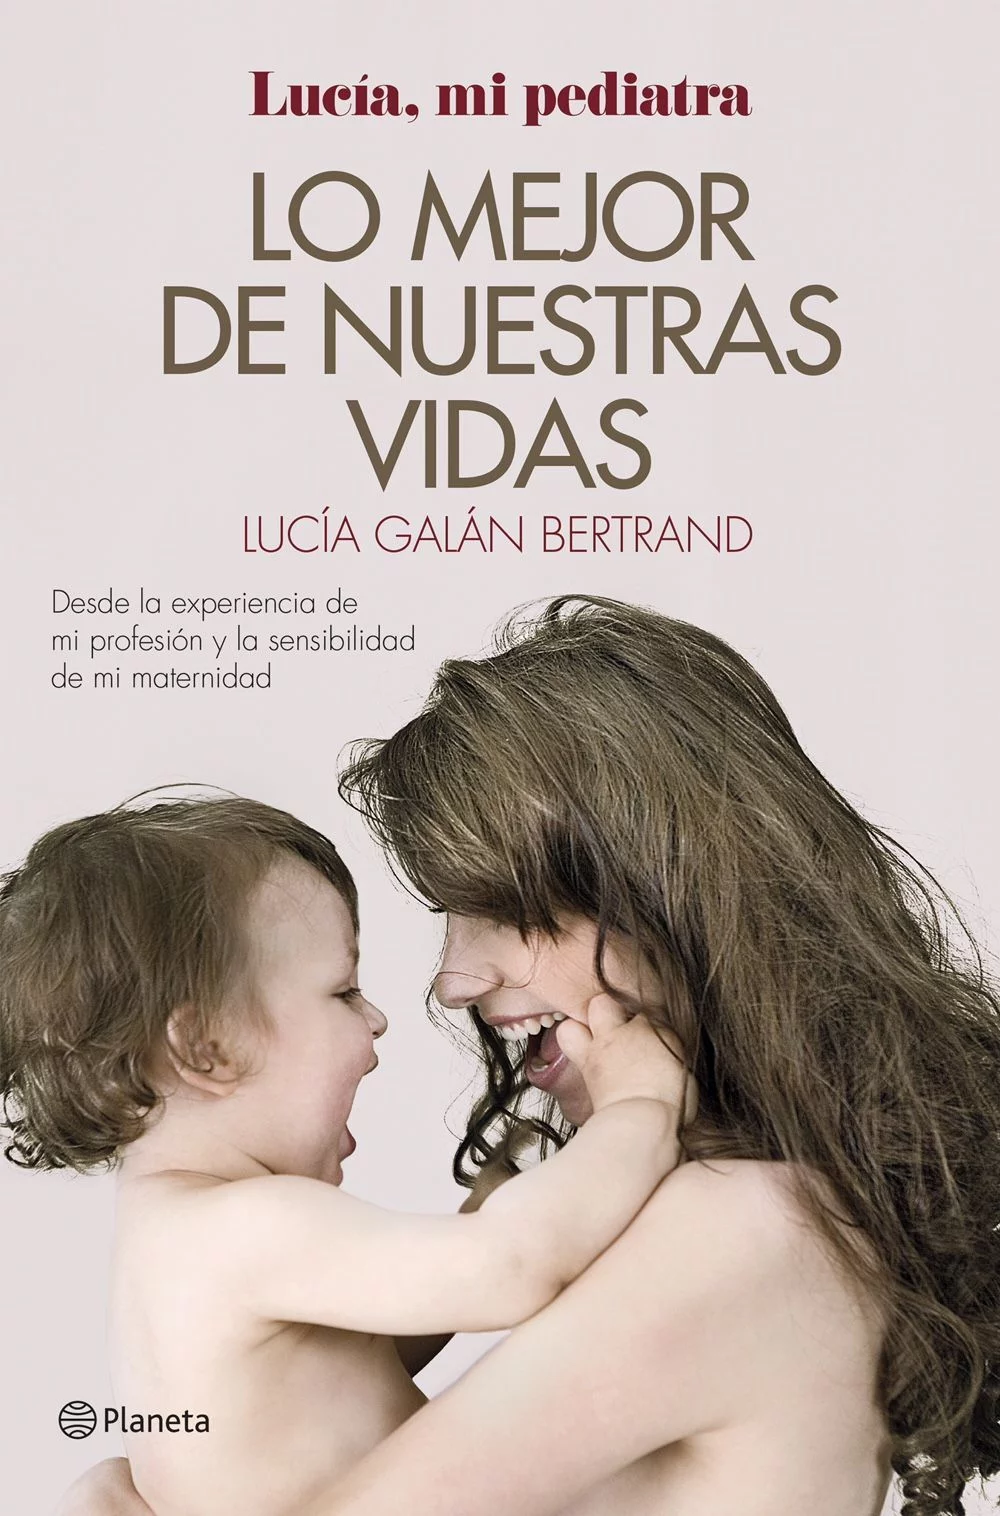 Lucía, mi pediatra: Hay que hablar a los niños sobre su propio